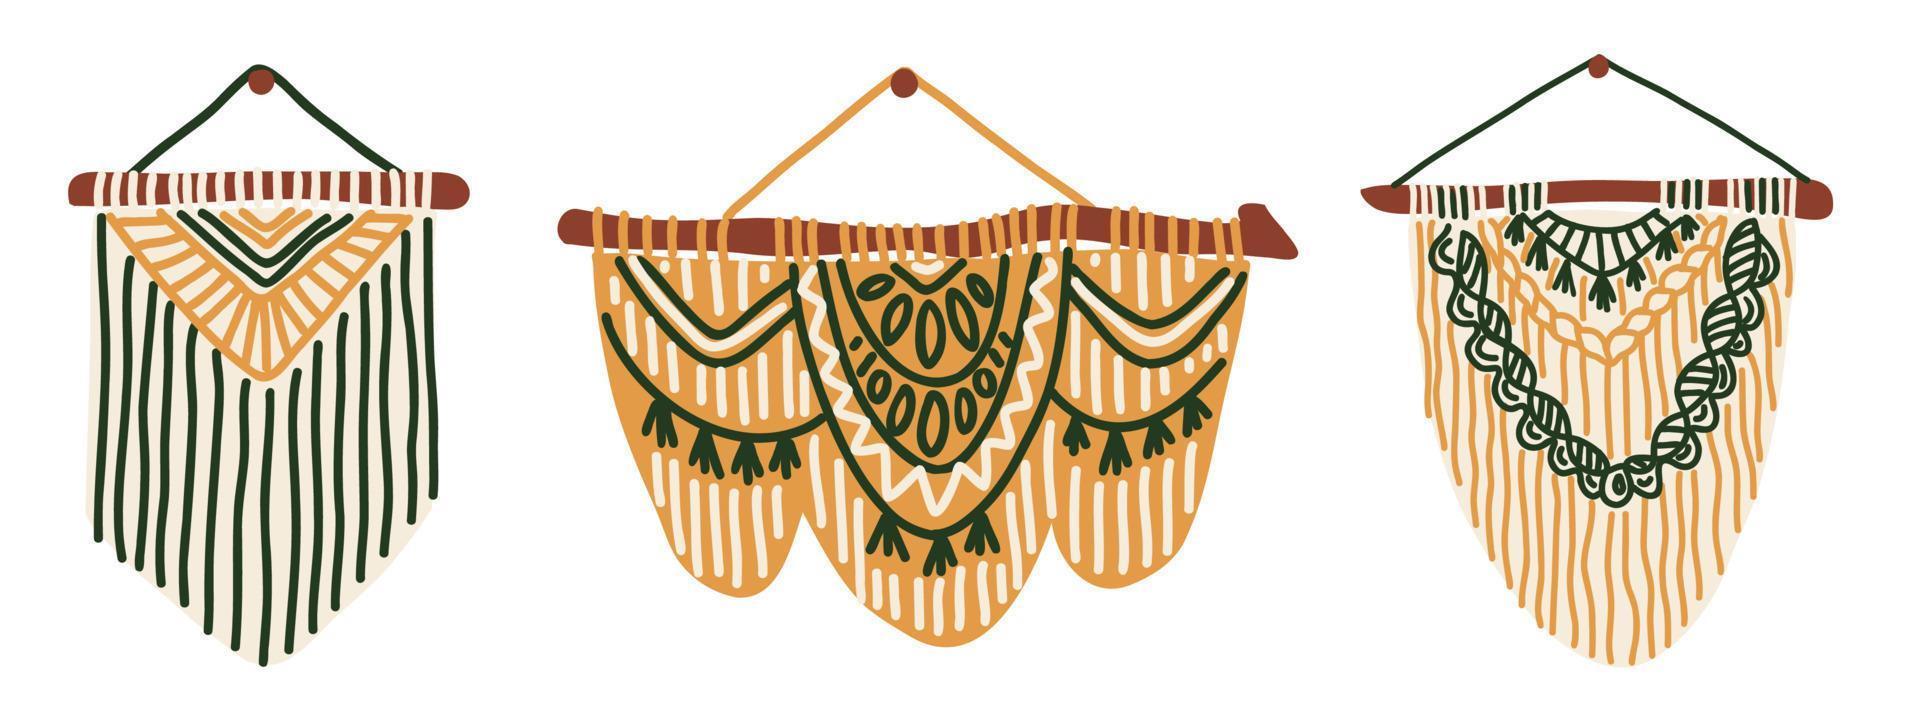 Set von handgefertigten Boho-Makramee-Wandbehängen. diy-innendekor-gestaltungselemente, einfache handgezeichnete vektorillustration vektor